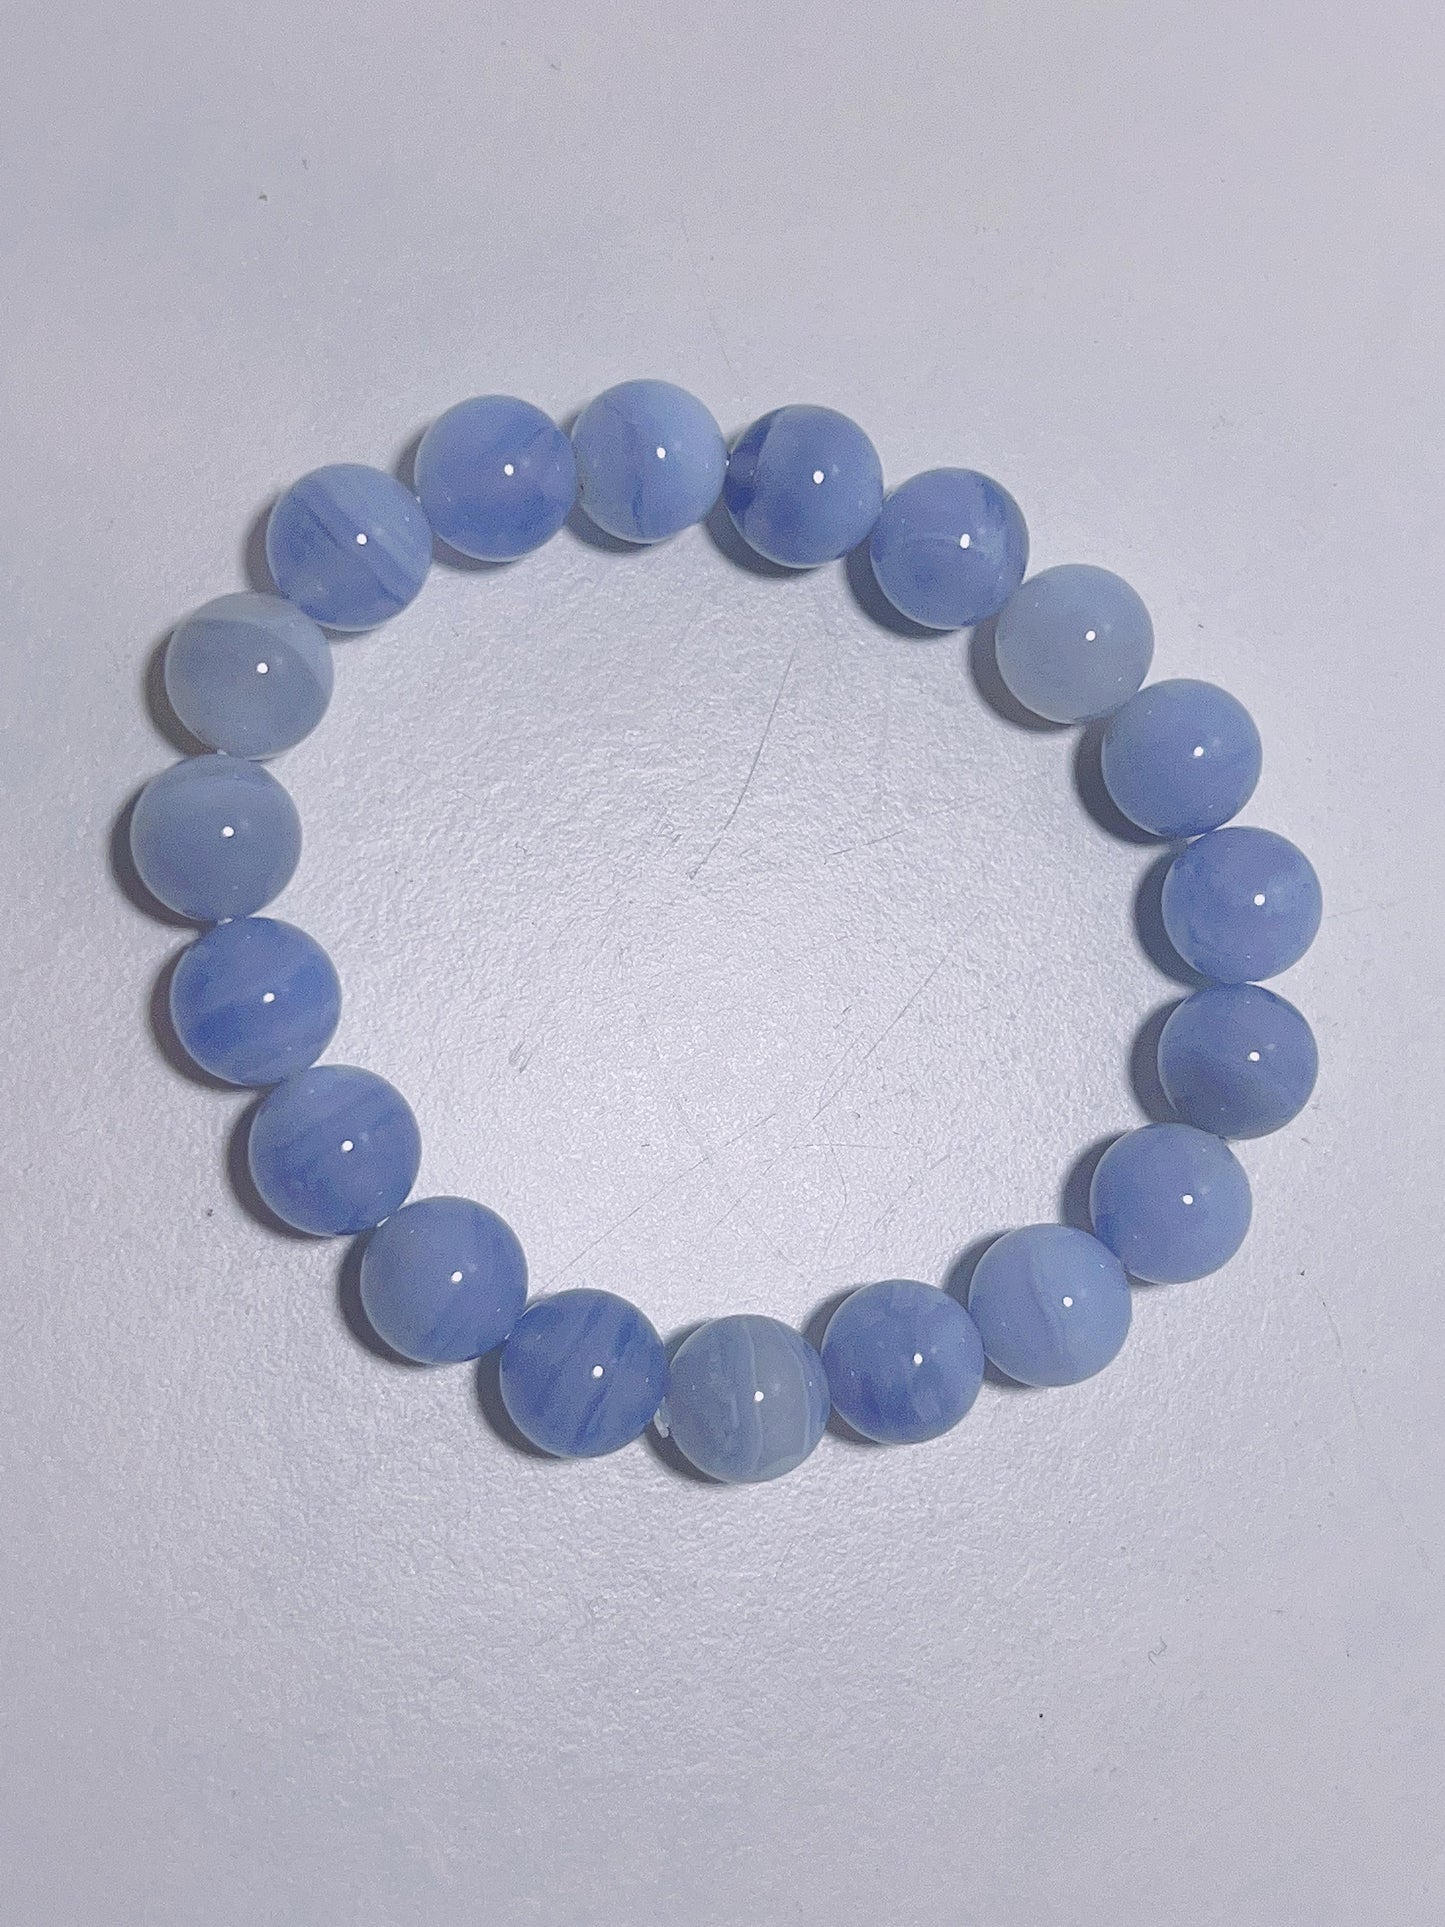 Blue Lace Agate Bracelet 11m